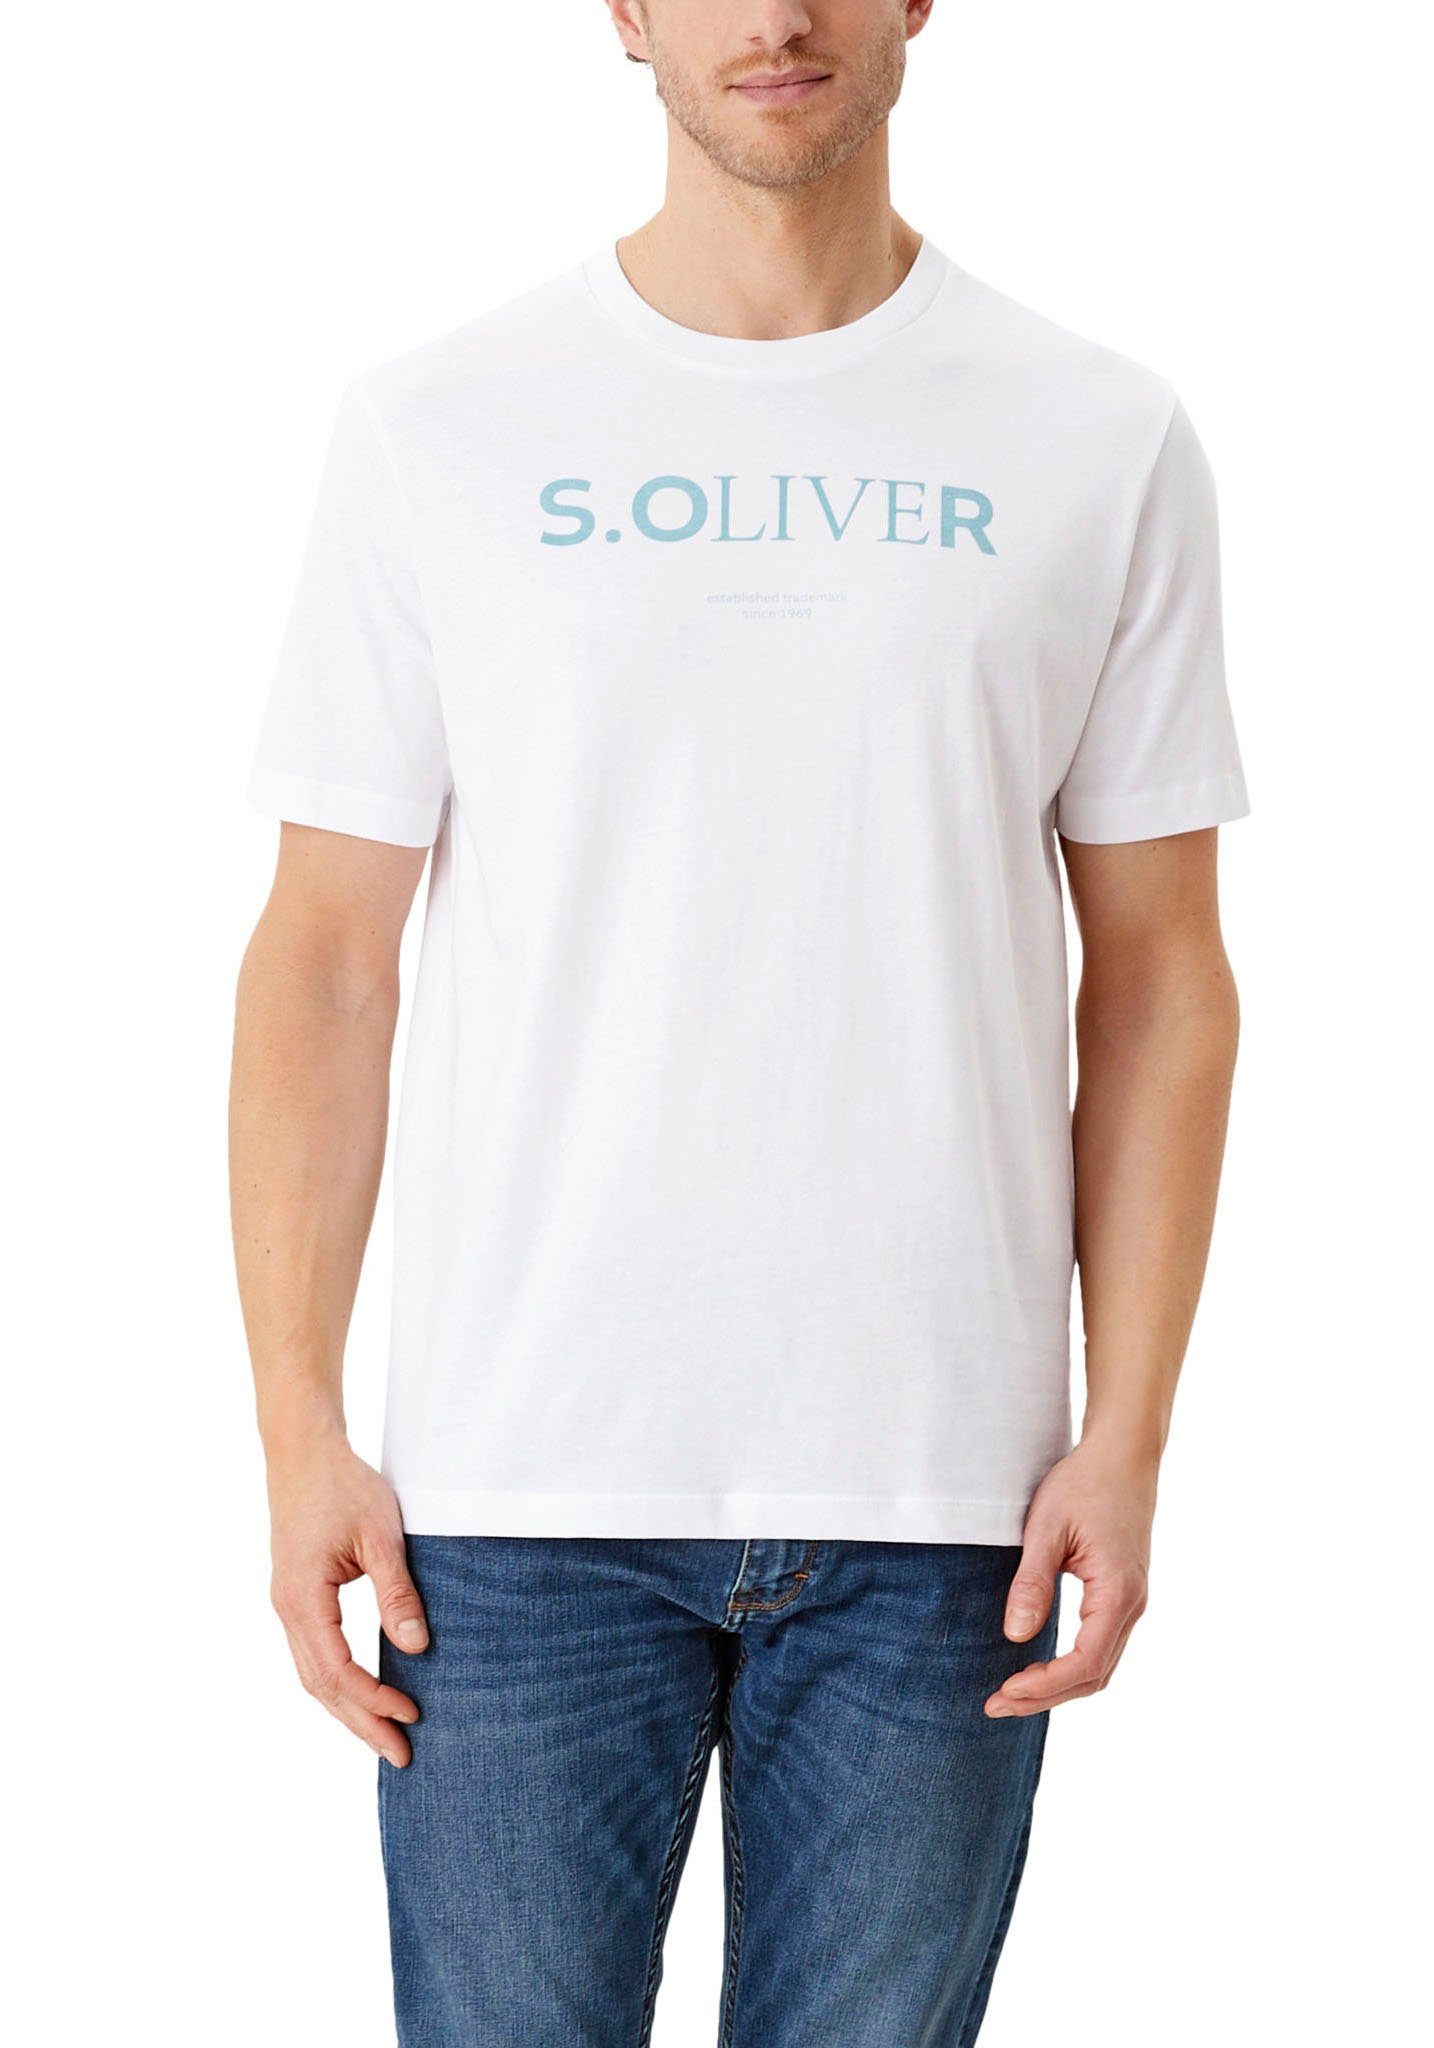 s.Oliver T-Shirt, Angenehmer Tragekomfort durch reine Baumwolle